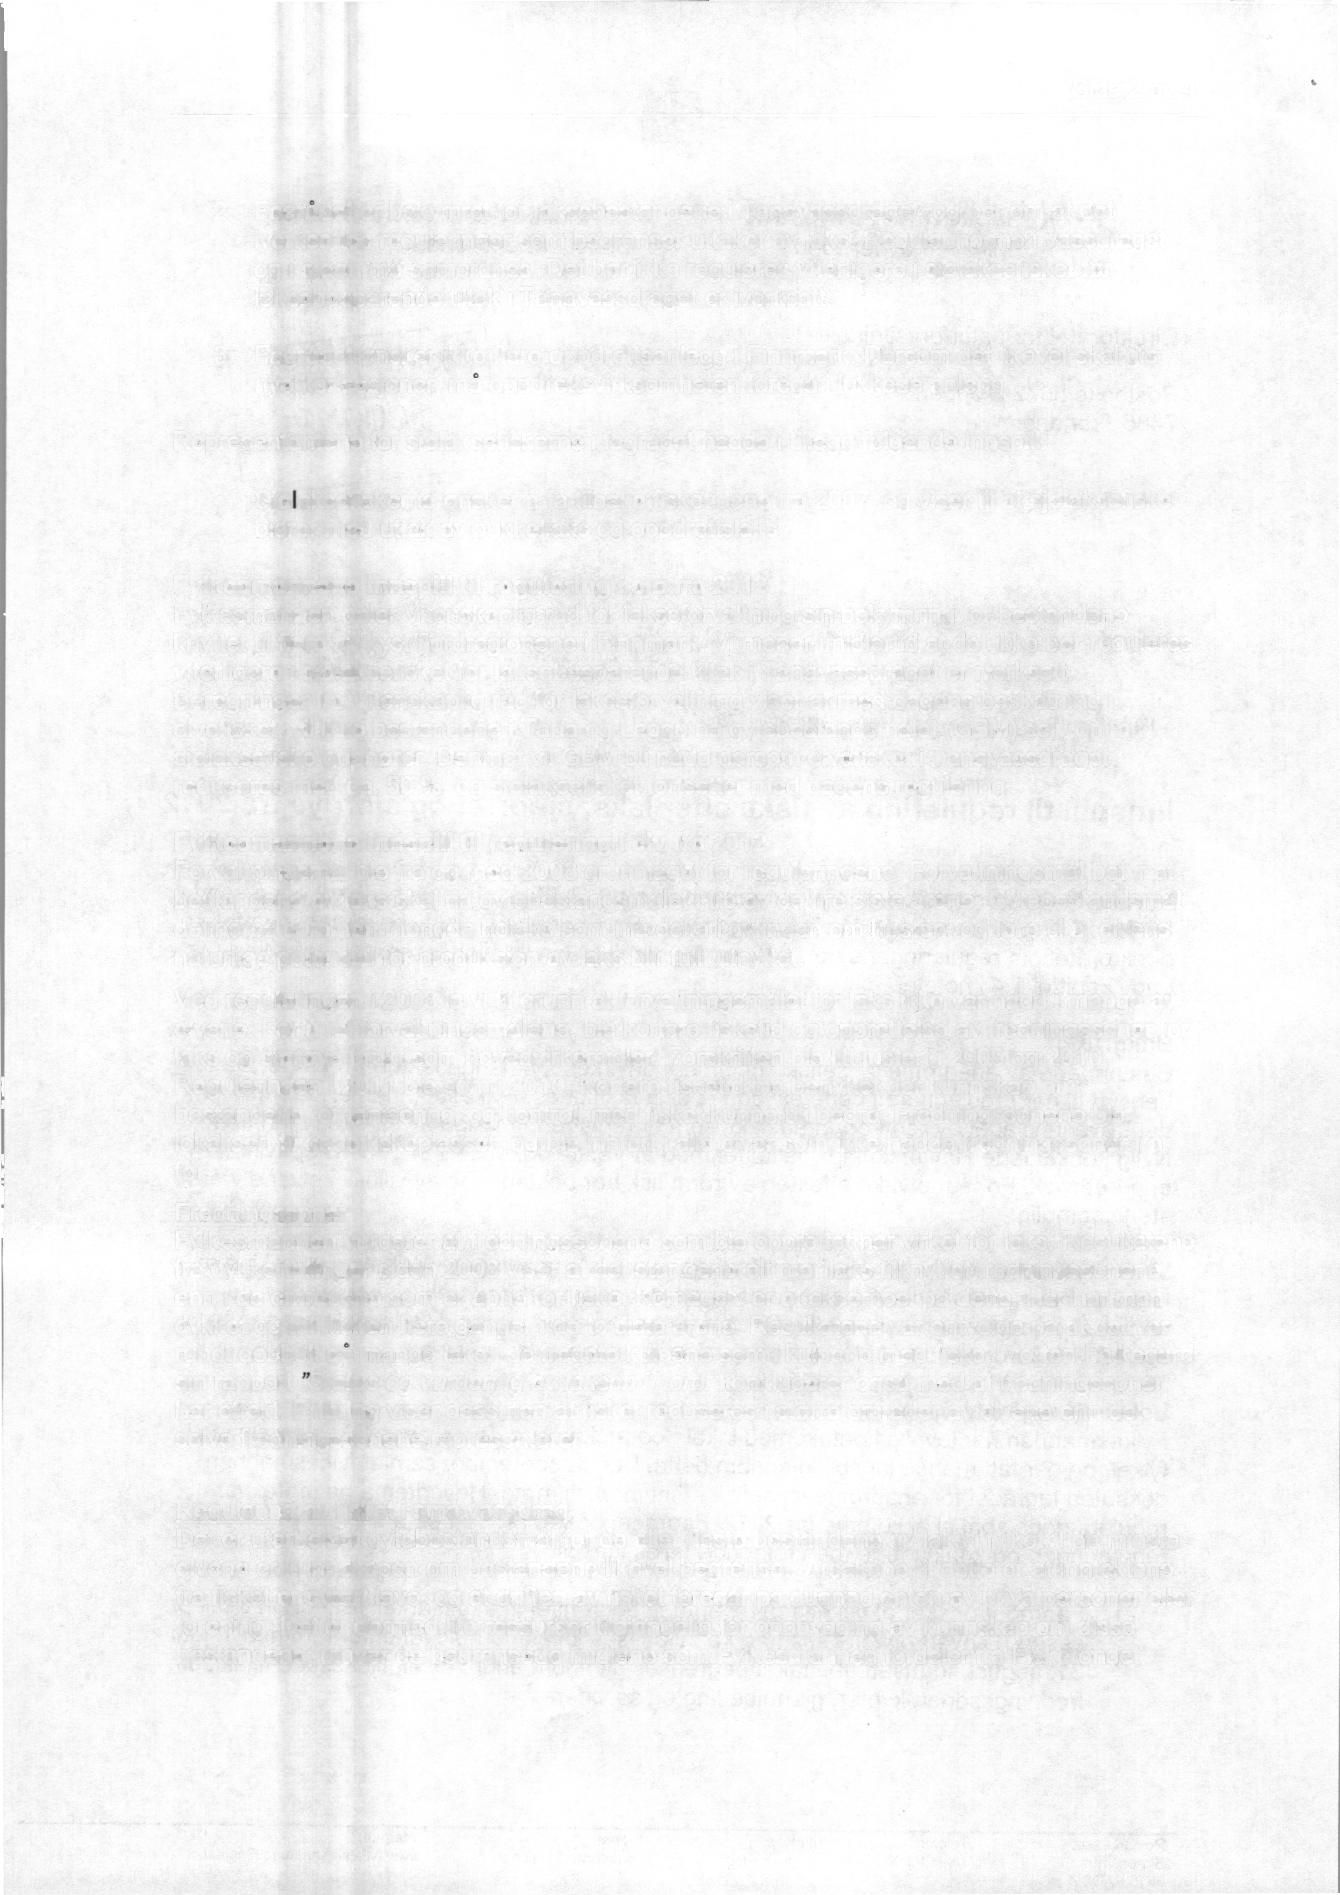 Side 2 av 4 2. Fagrådet er bekymret for laksebestandene i Tanavassdraget, og ber om at det iverksettes reguleringer som begrenser uttaket av laks. Reguleringene i vassdraget og i sjøen må samordnes.